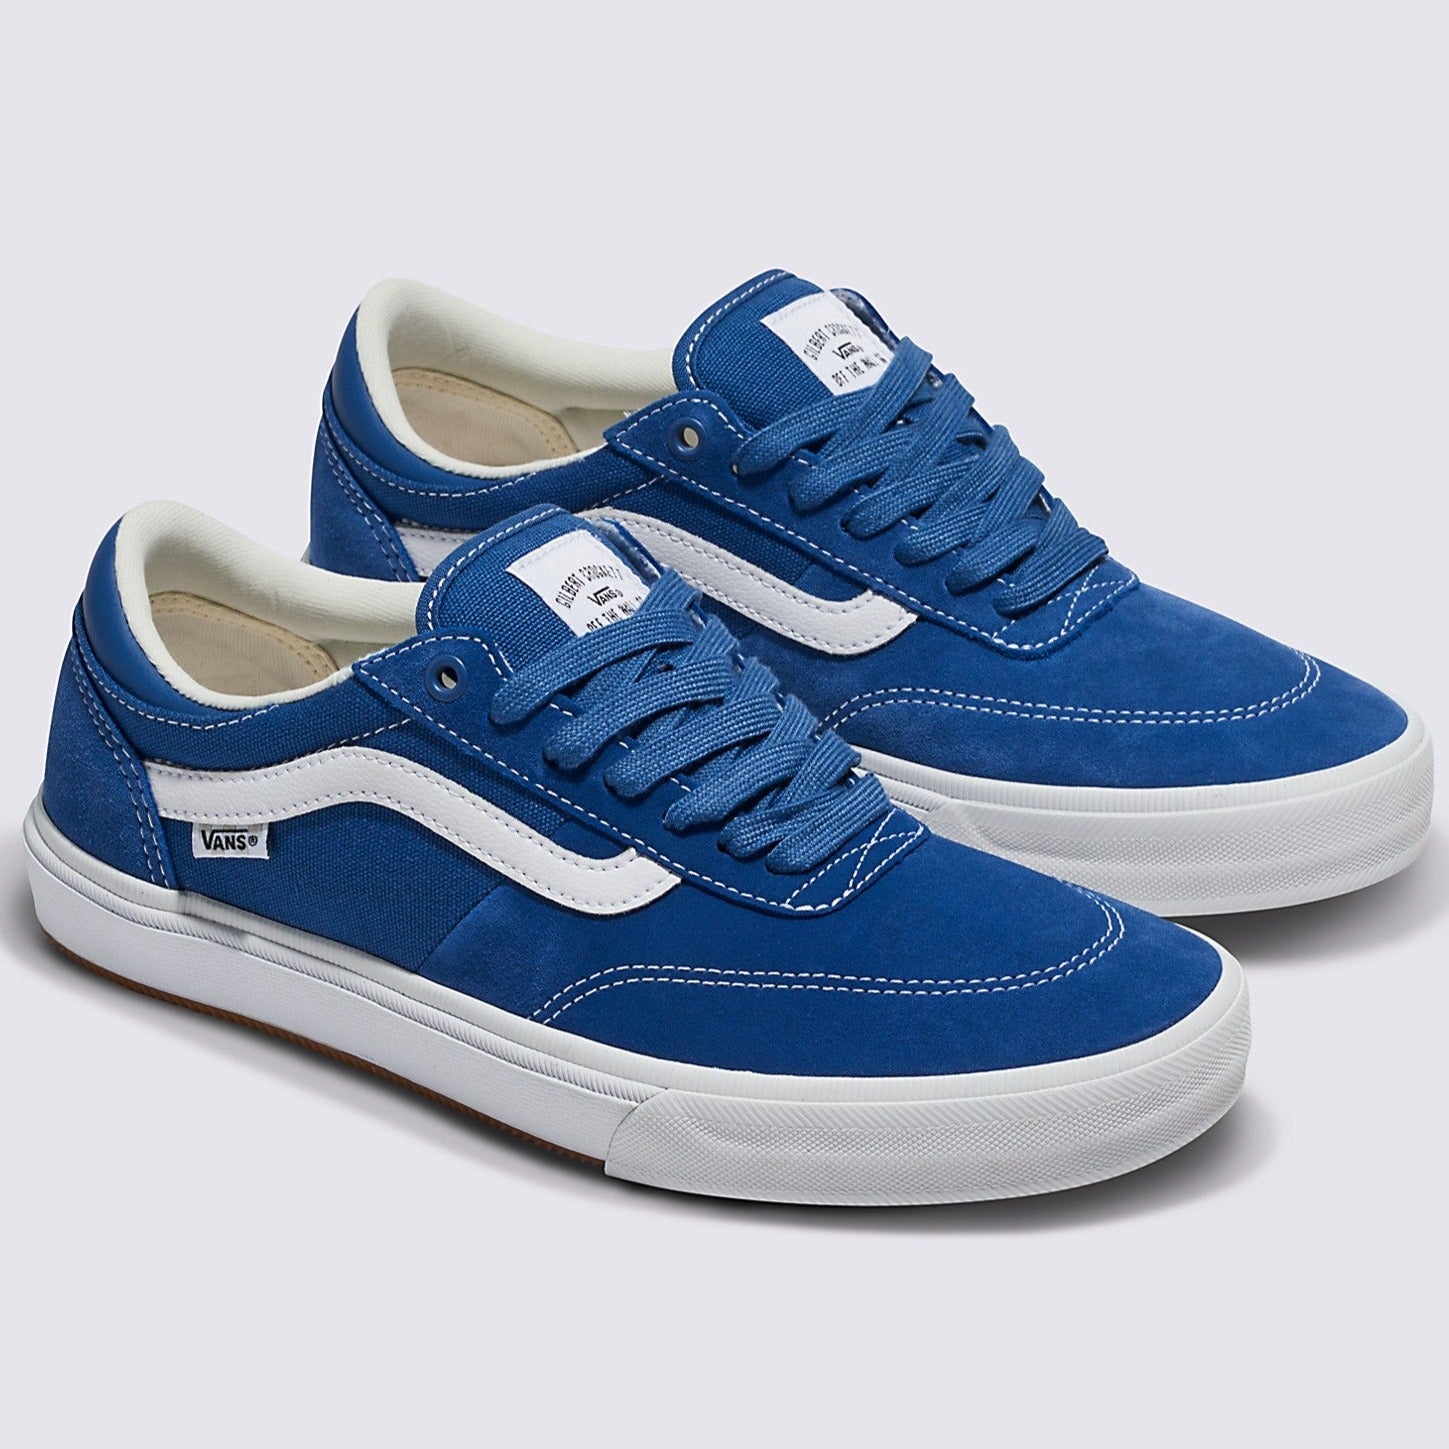 Blue/White Gilbert Crockett Vans Skate Shoe